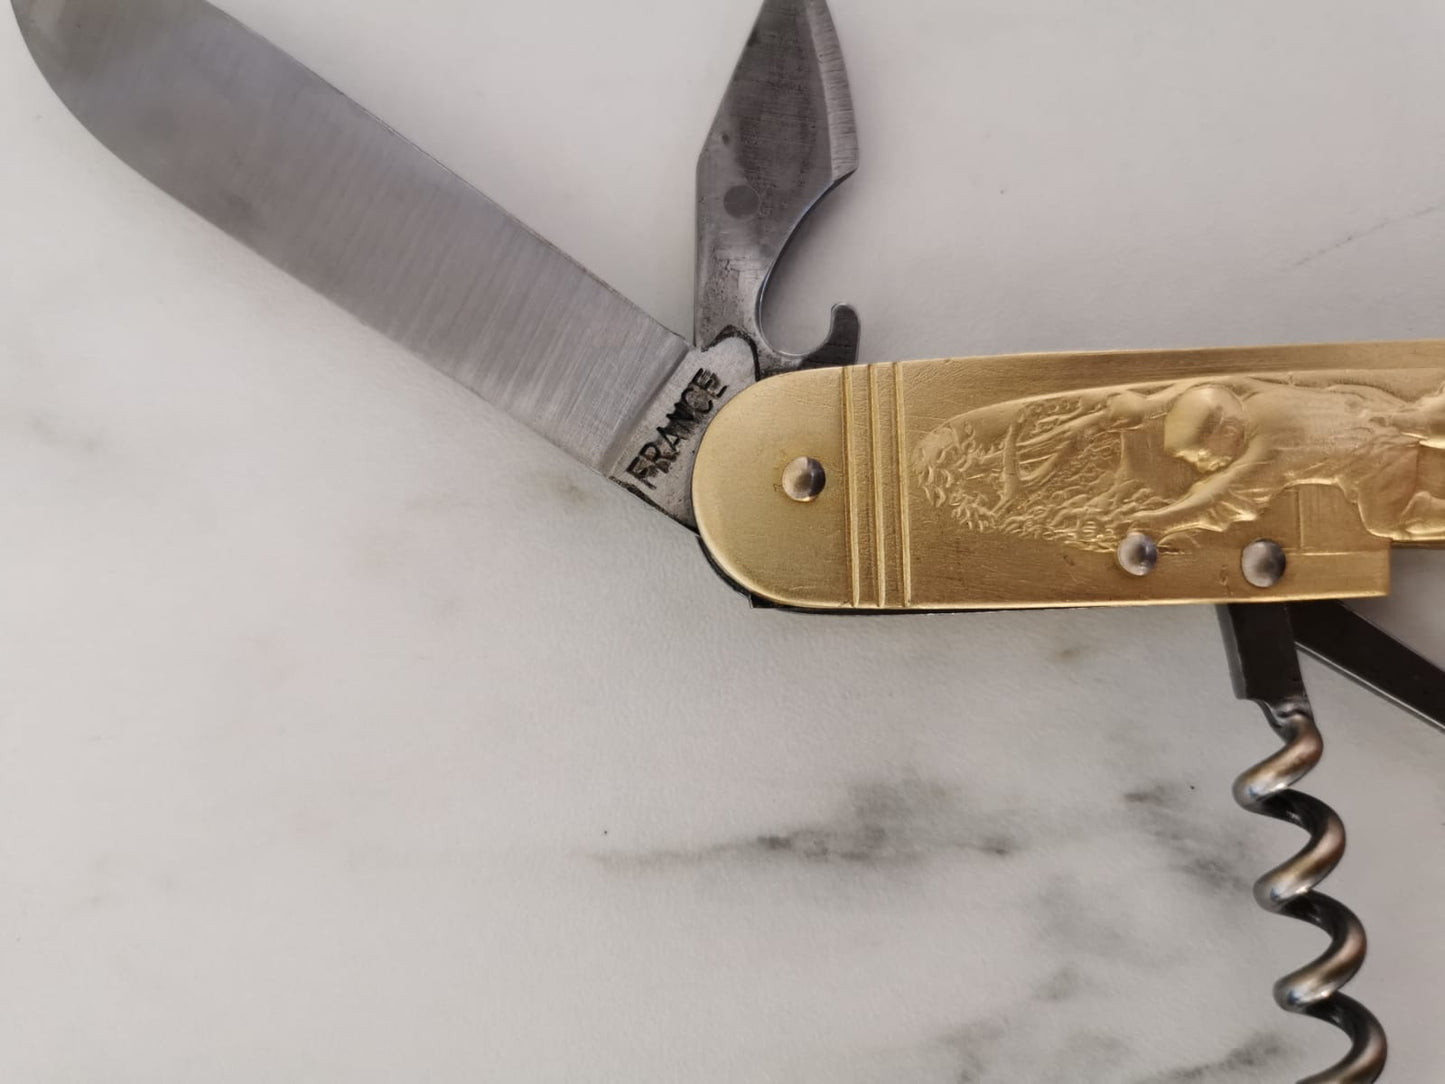 Couteau Artisanal de poche en Laiton Doré type suisse - ALLWENEEDIS